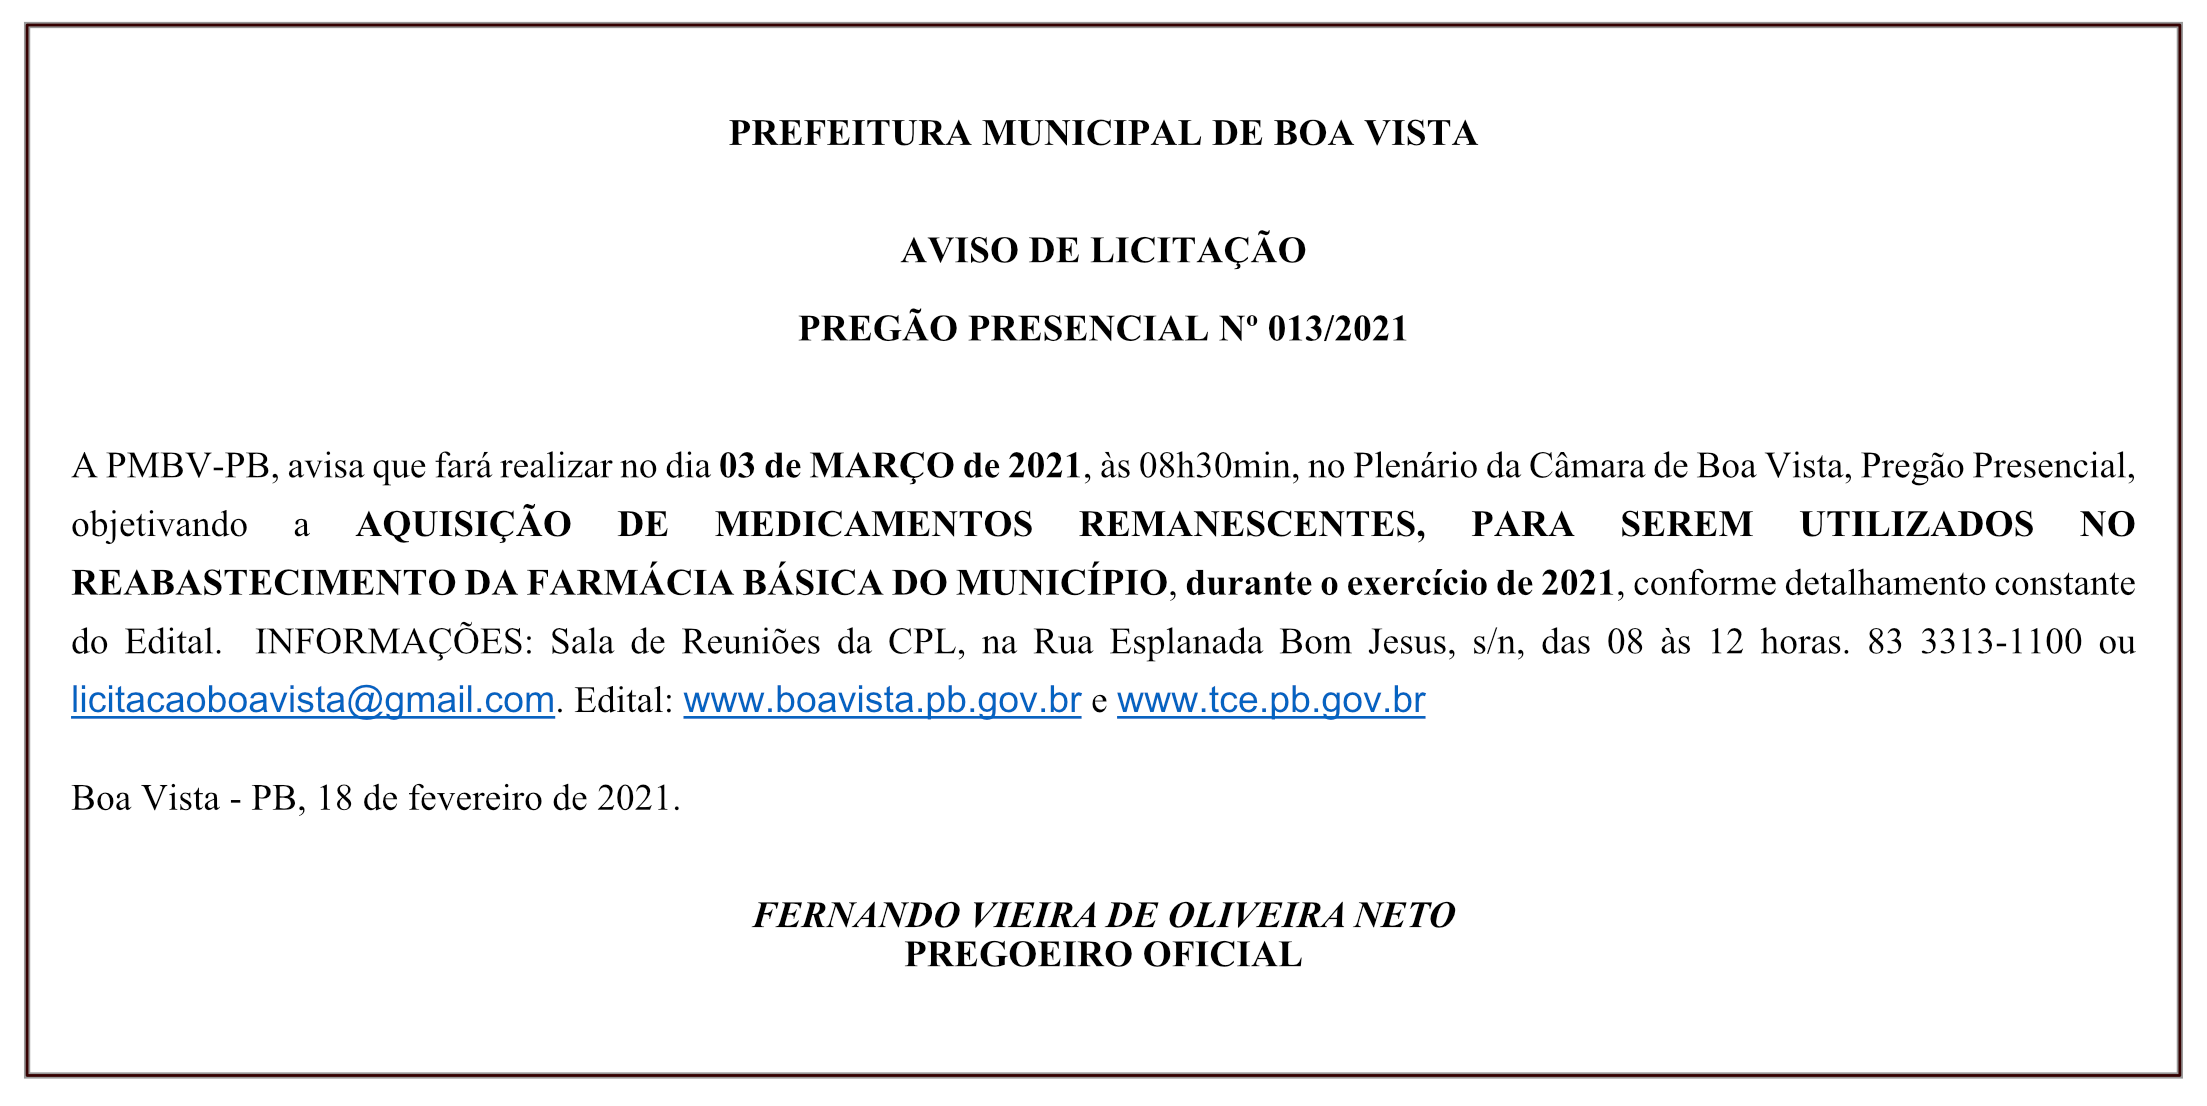 PREFEITURA MUNICIPAL DE BOA VISTA – AVISO DE LICITAÇÃO – PREGÃO PRESENCIAL Nº 013/2021